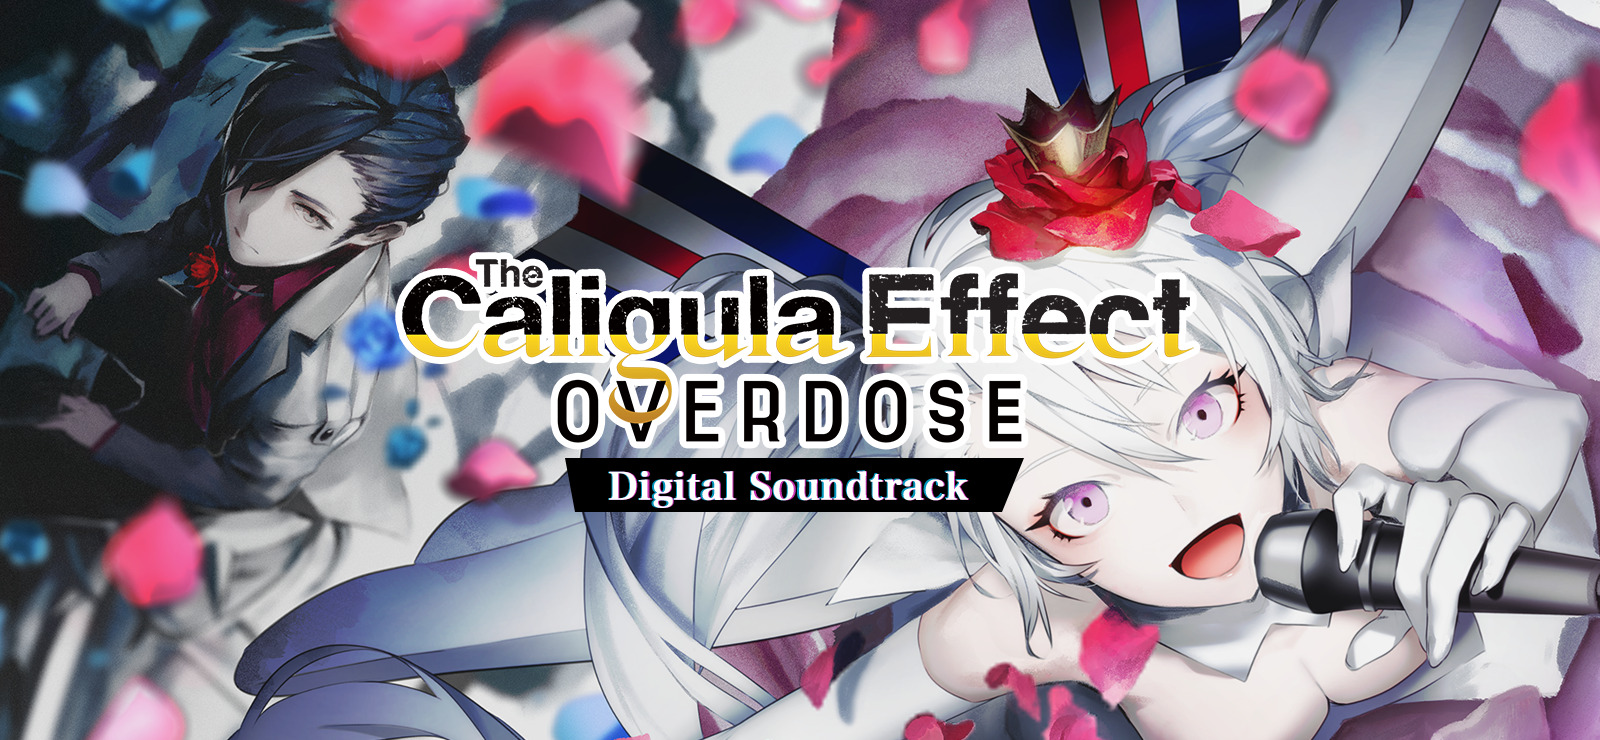 The Caligula Effect: Overdose - Digital Soundtrack DLC Steam CD Key, 4.36$